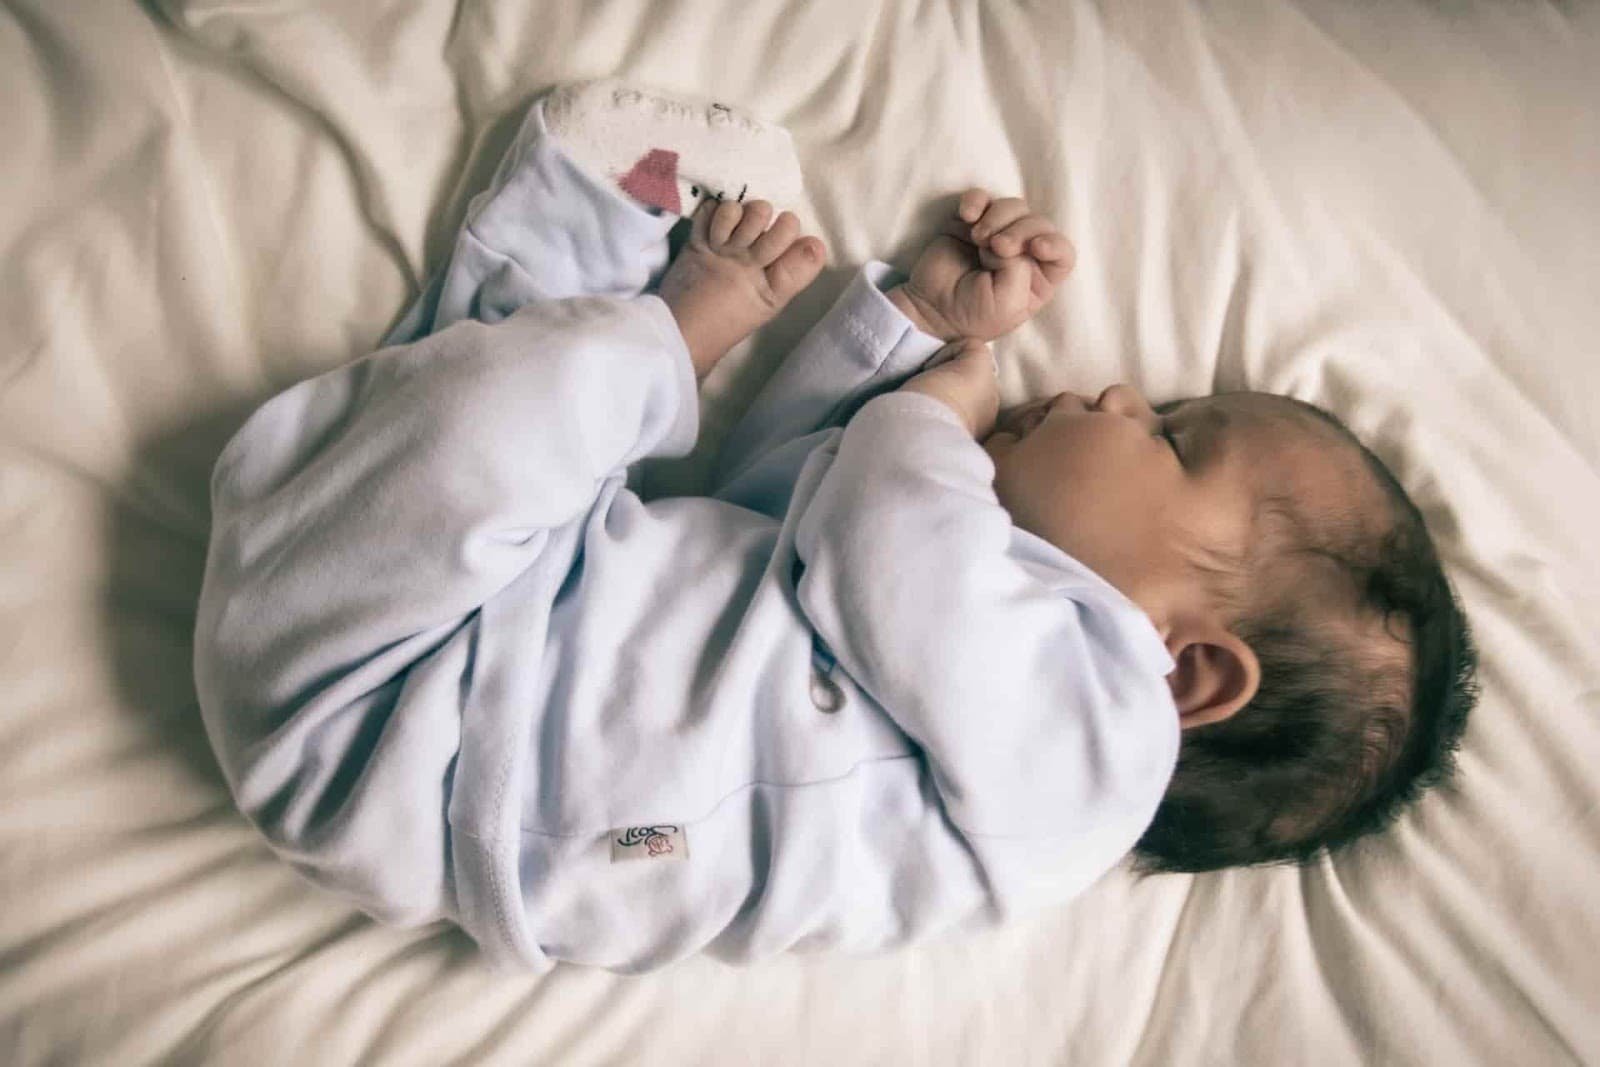 Hilft das weiße Rauschen eines Haartrockners einem Baby beim Einschlafen?